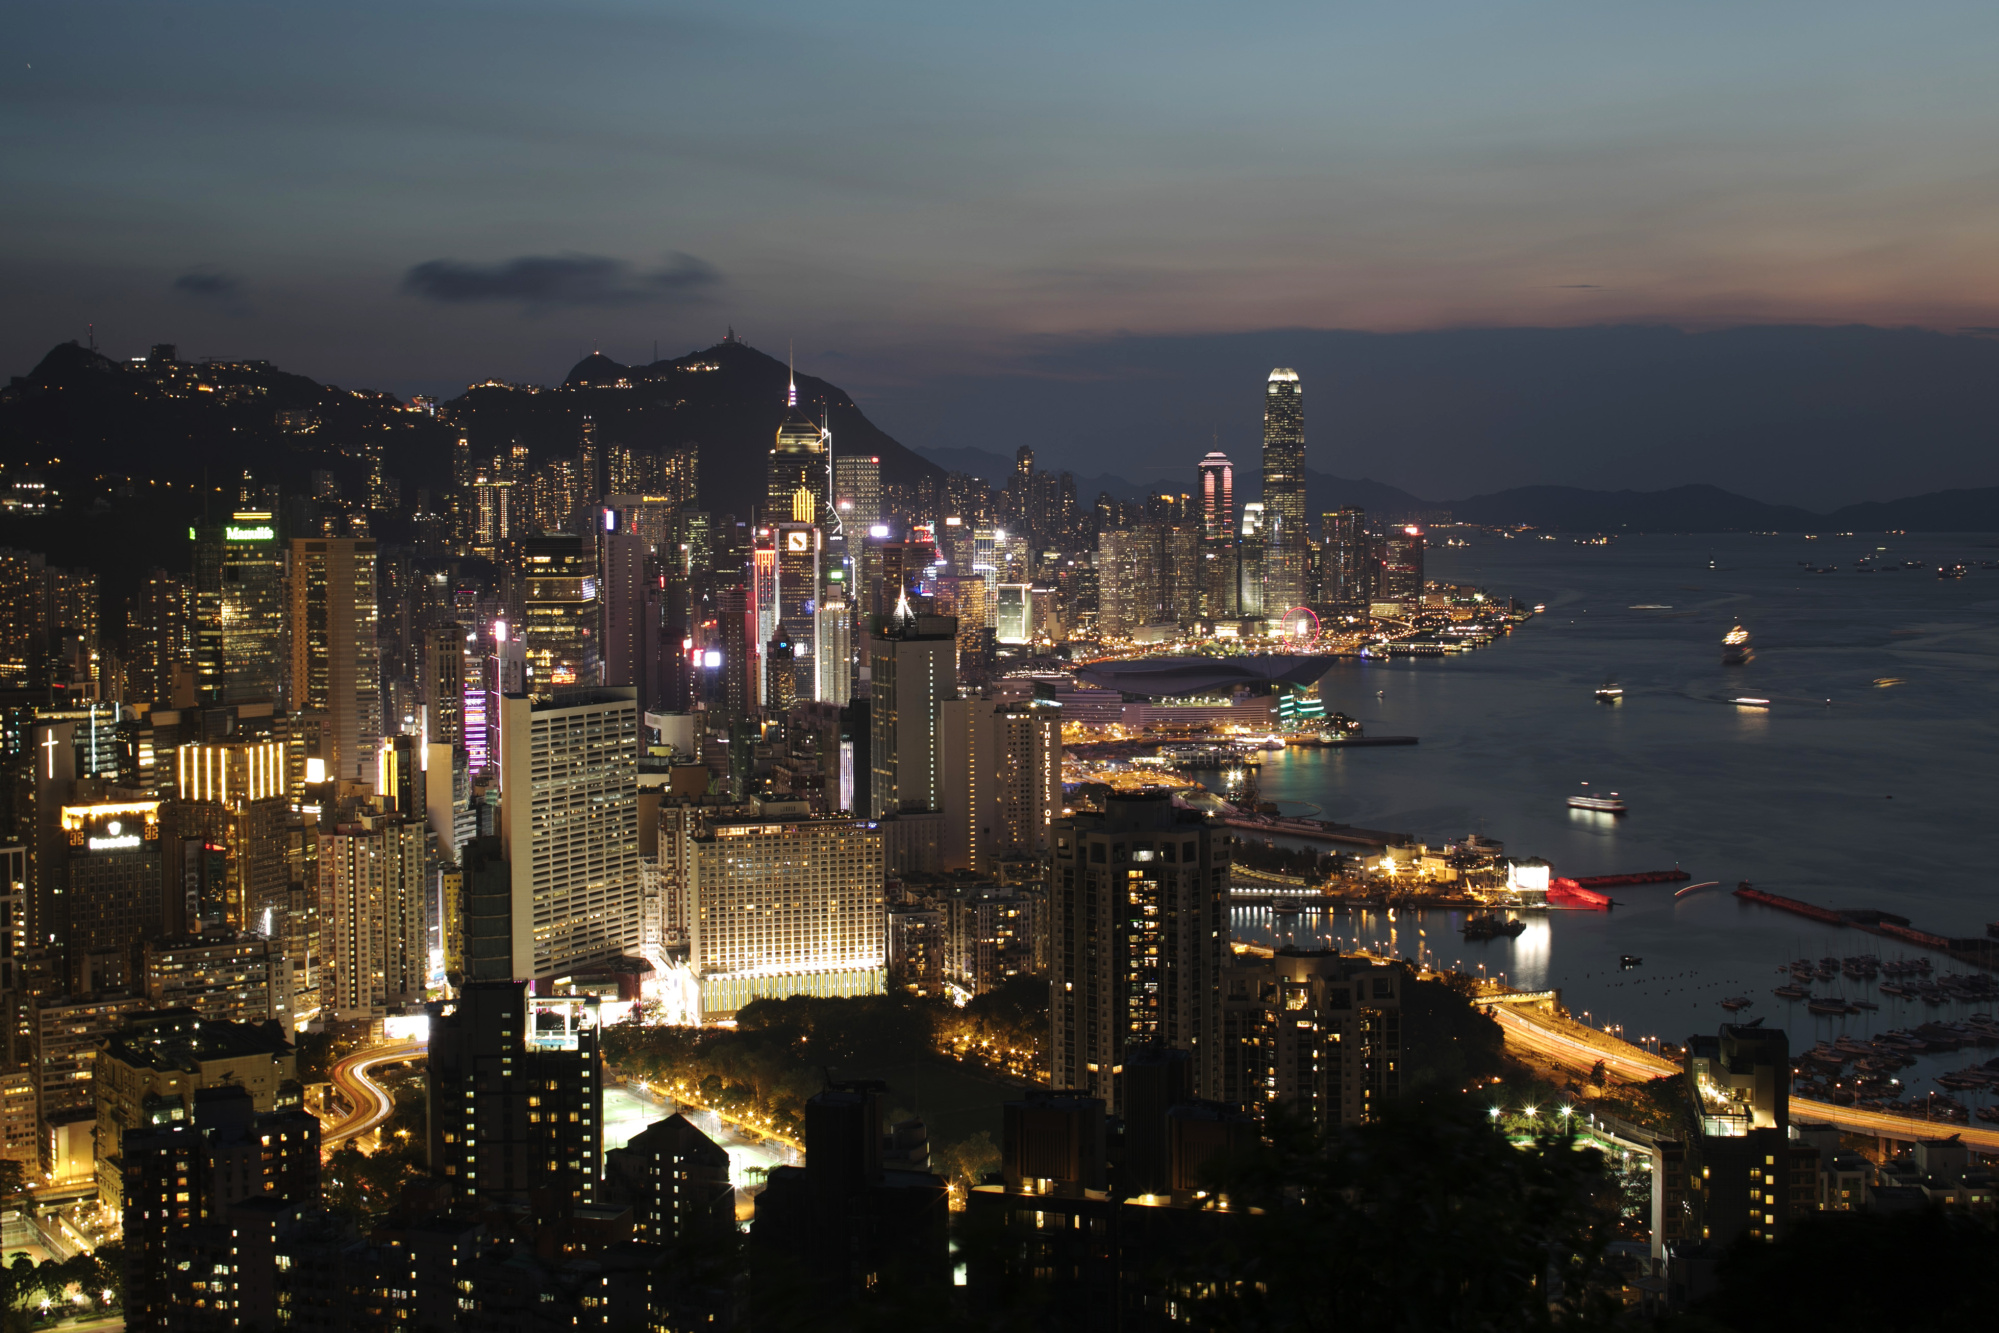 Buildings stand illuminated at dusk in Hong Kong.